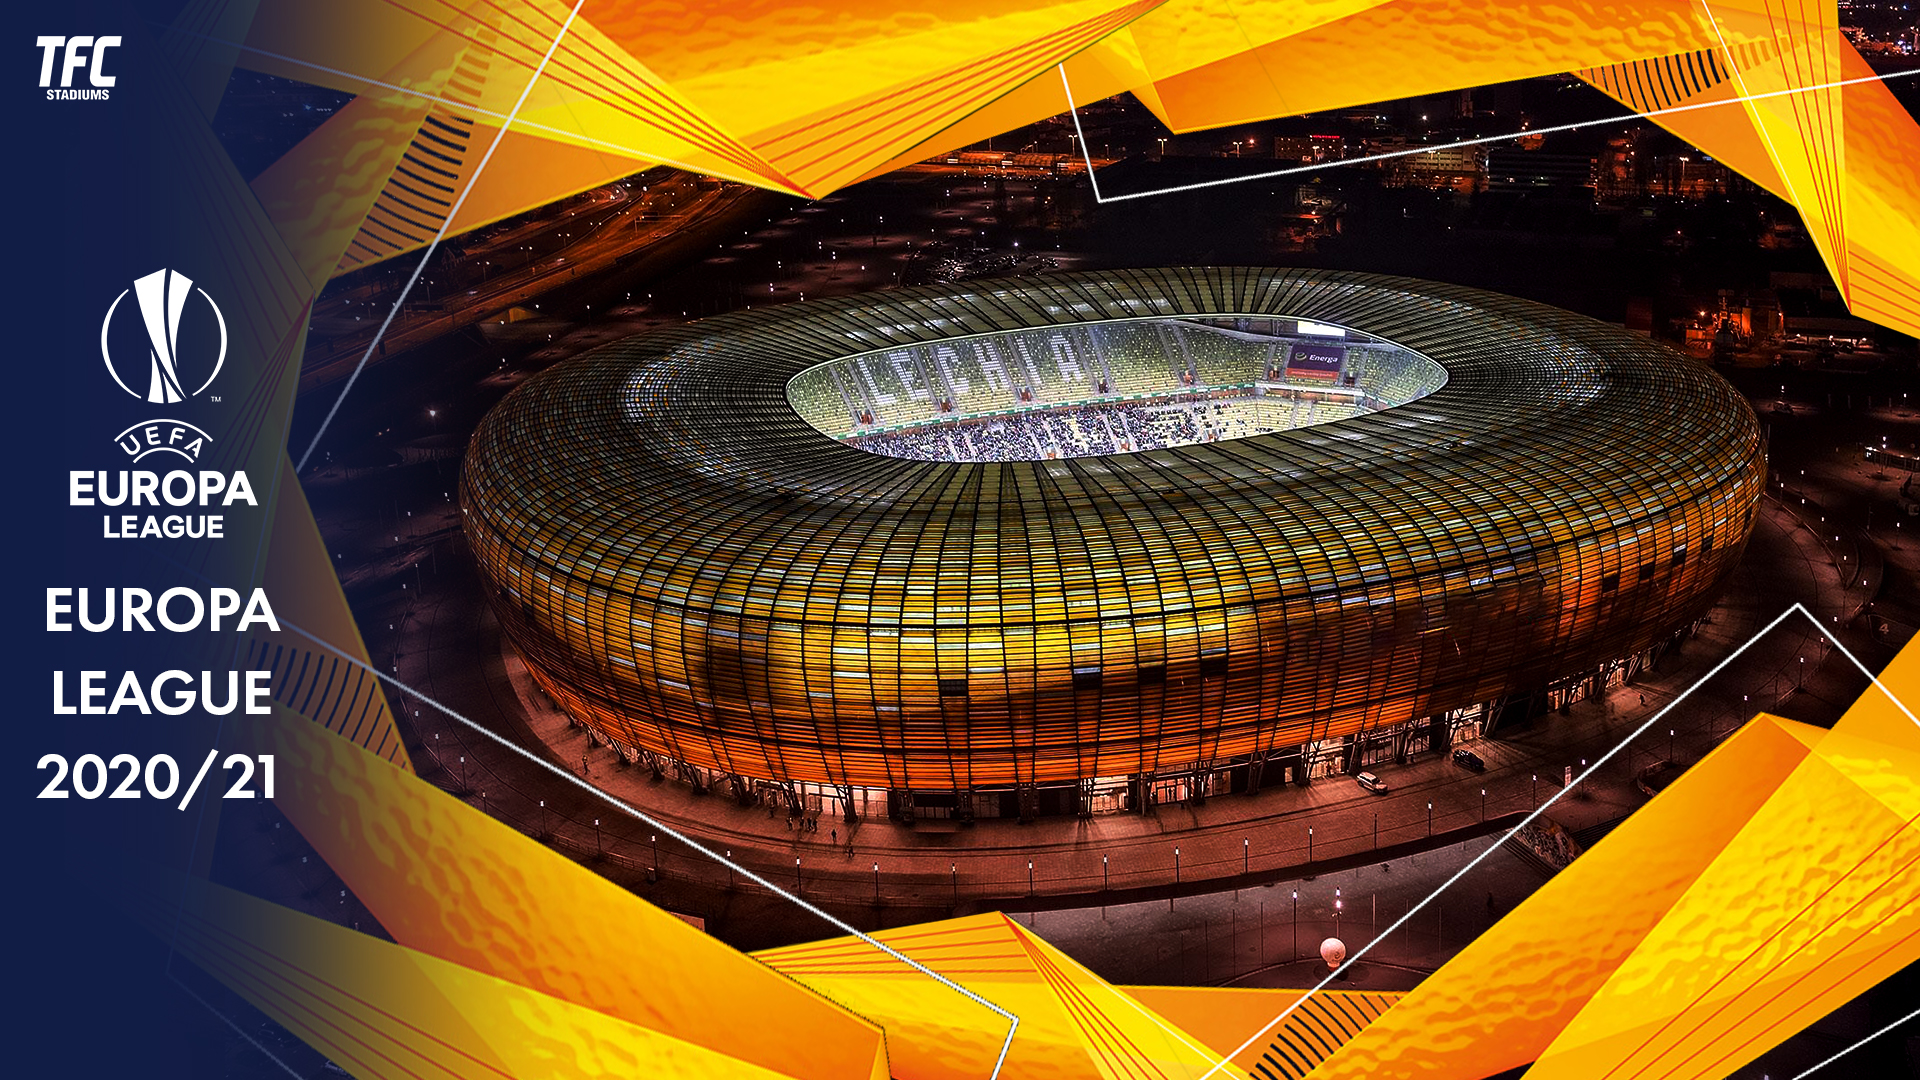 UEFA Europa League 2020/21 Stadiums - TFC Stadiums